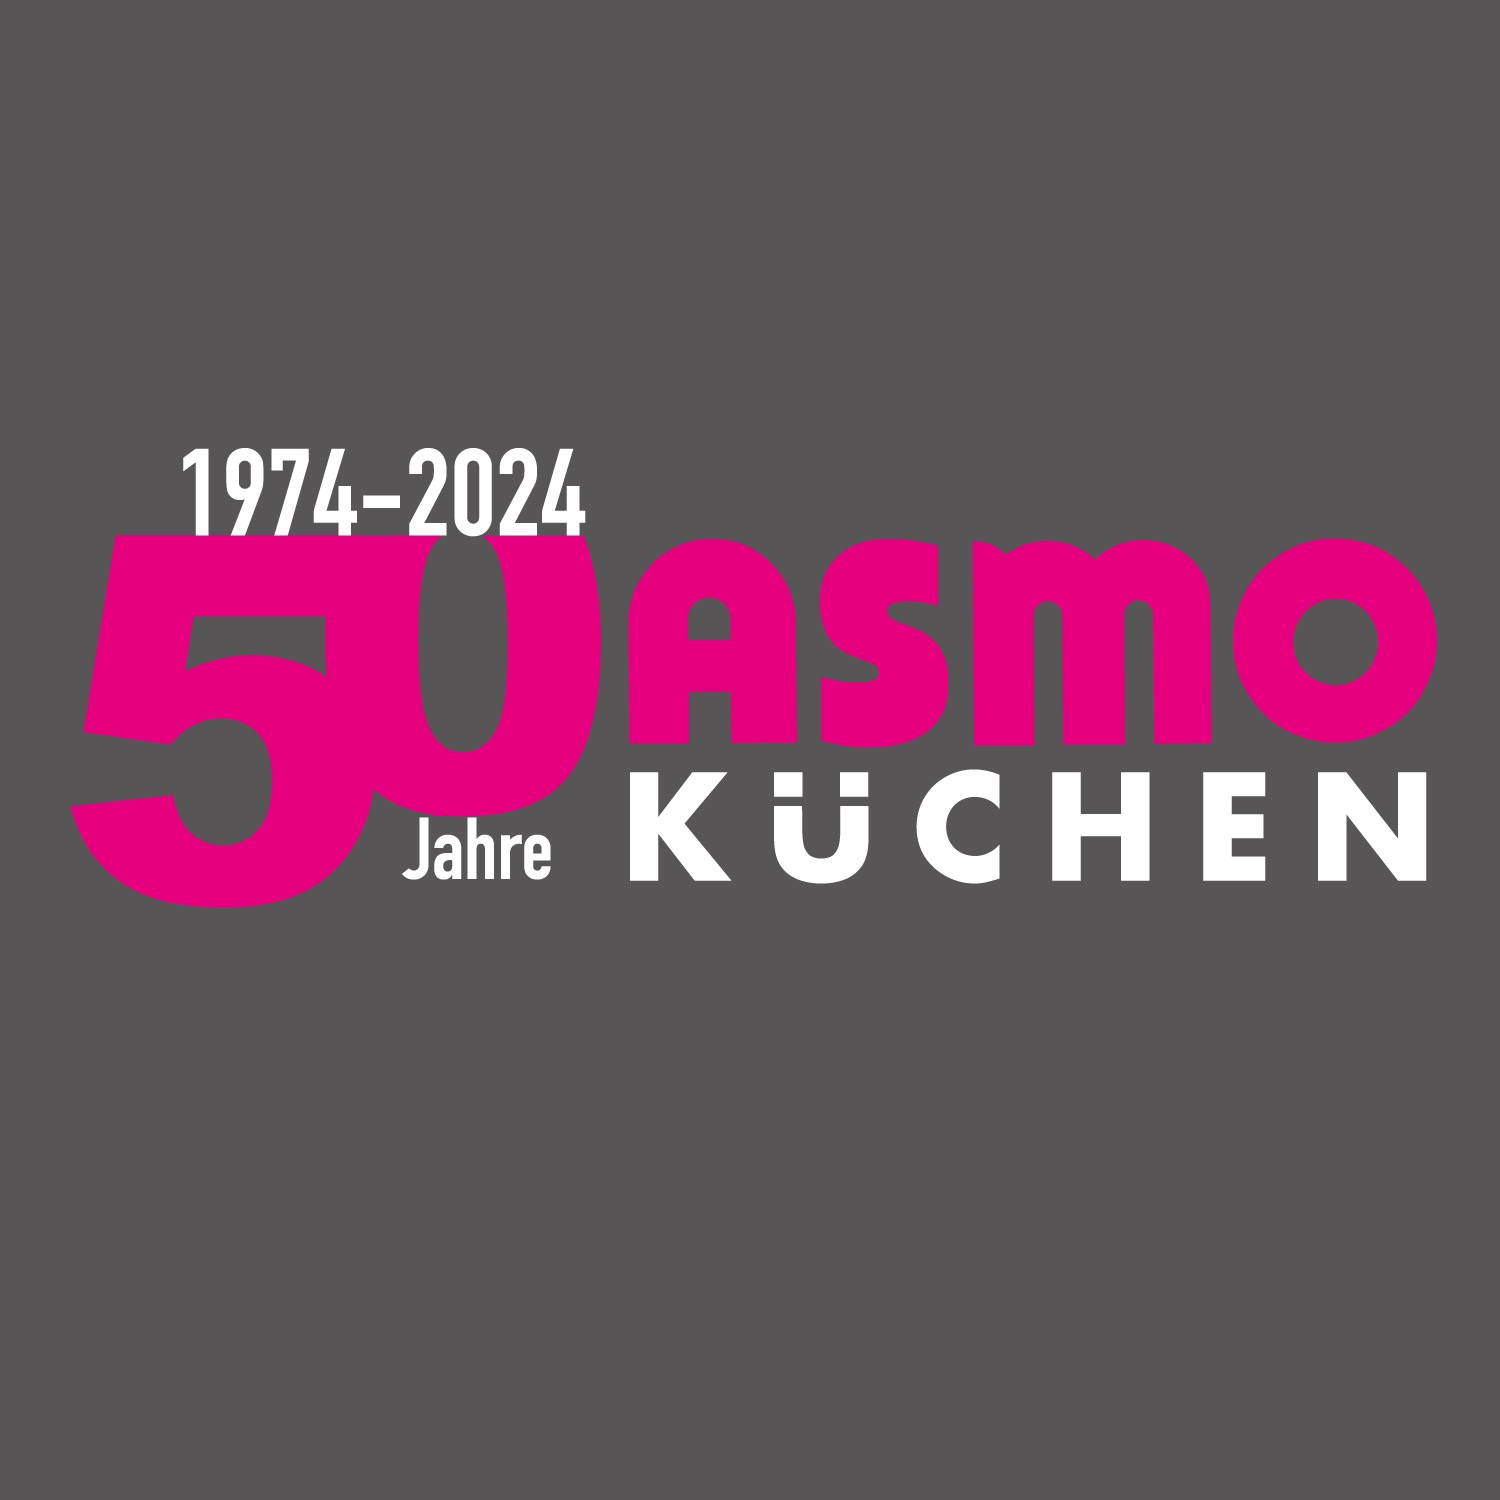 Seit 1974 Ihr Spezialist für Einbauküchen in Bayern